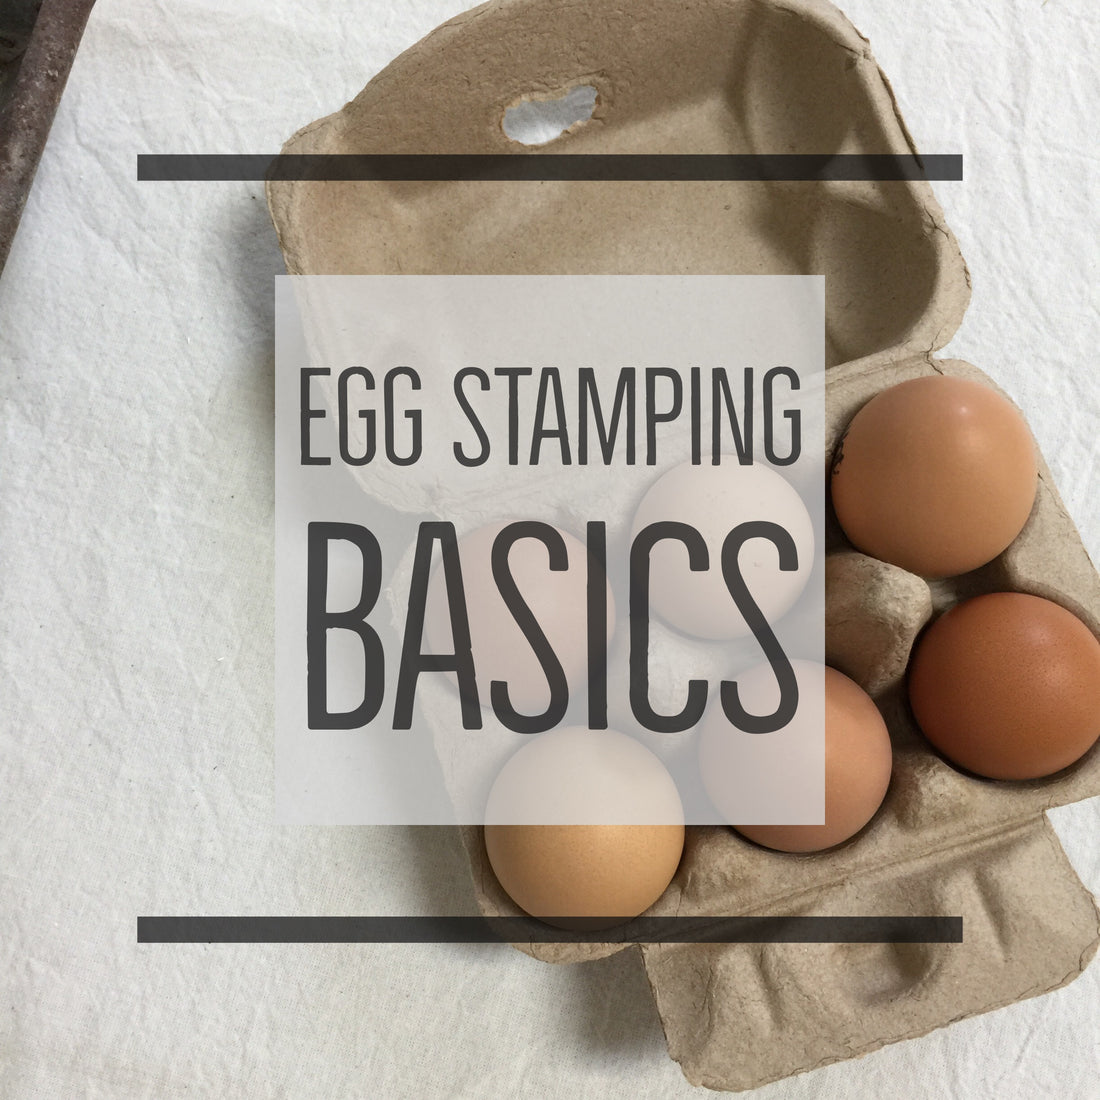 Egg Stamping - The Basics